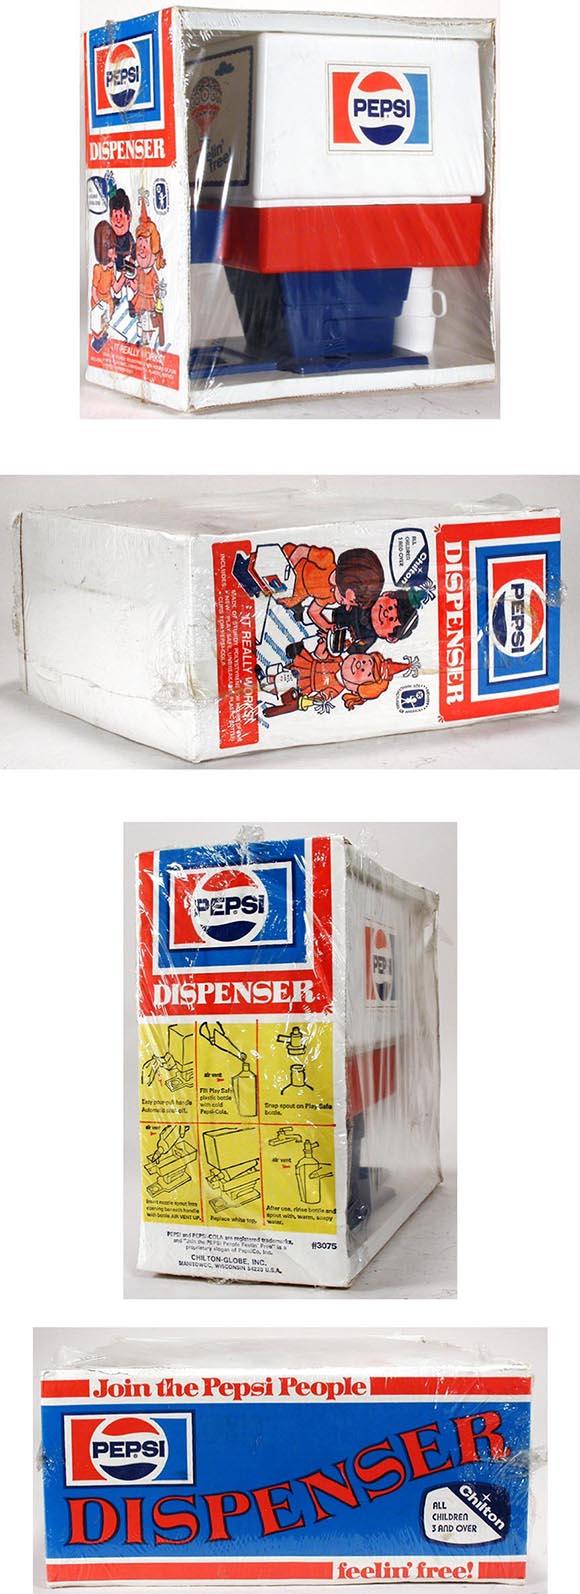 c.1975 Chilton, Pepsi Dispenser in Sealed Original Box